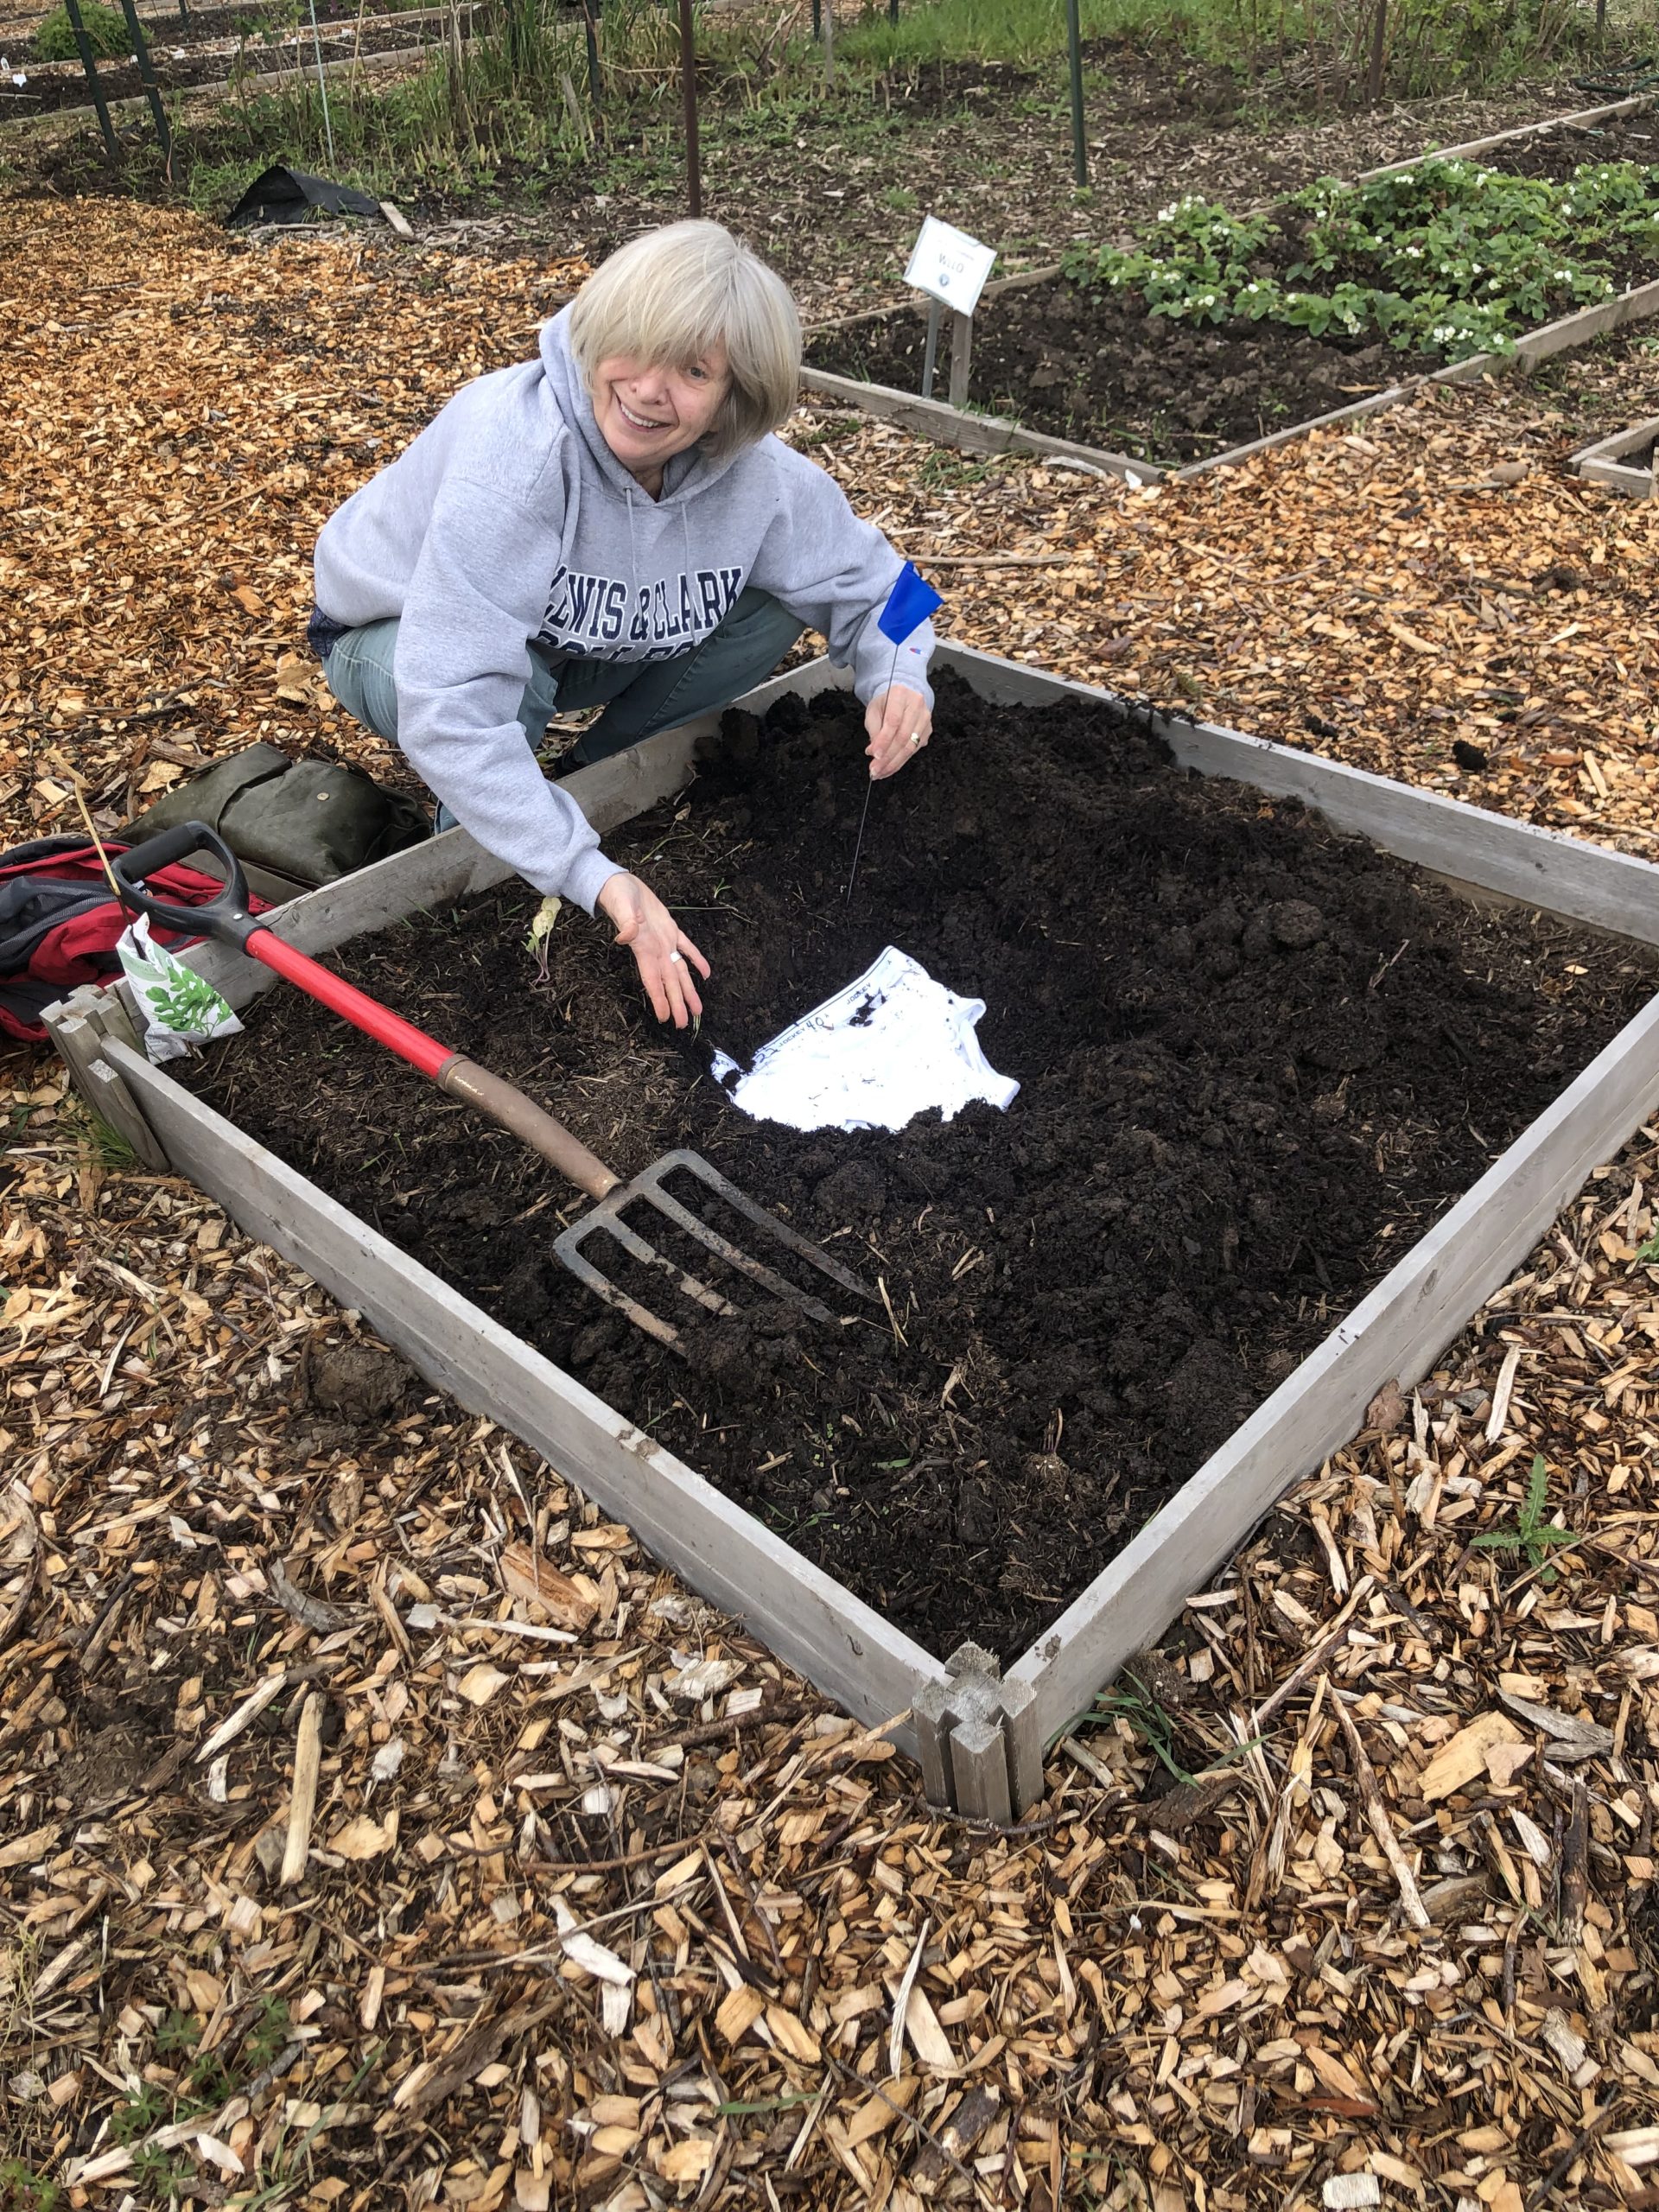 Soil Your Undies' asks Pennsylvania to bury underwear to test soil - EHN